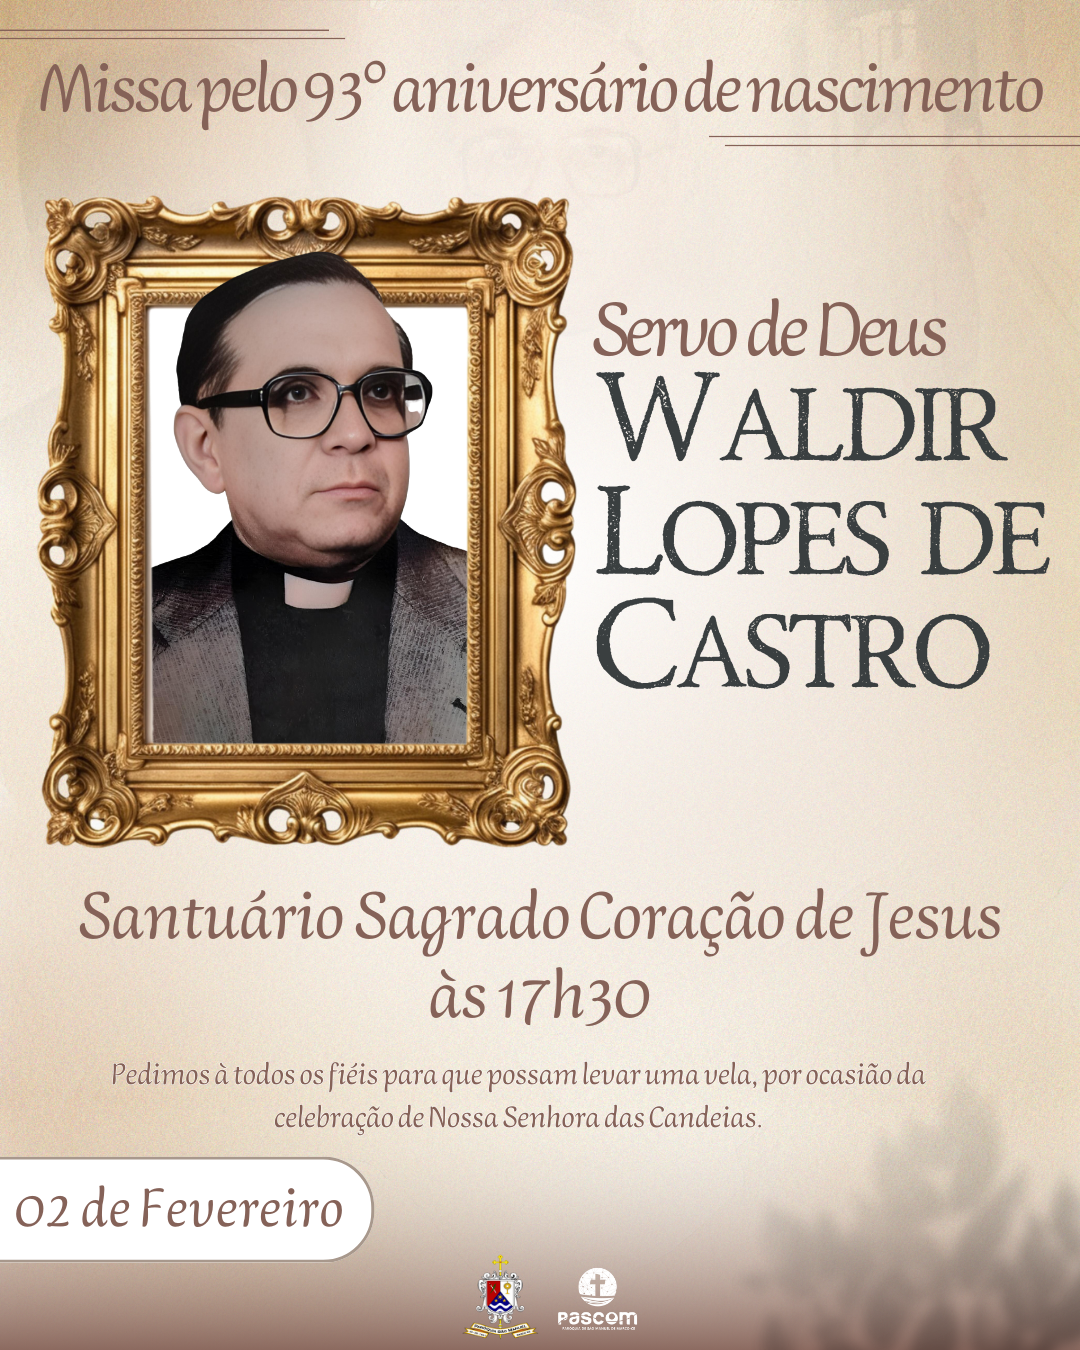 93° aniversário do Servo de Deus Waldir Lopes de Castro. Créditos: Paróquia de São Manuel